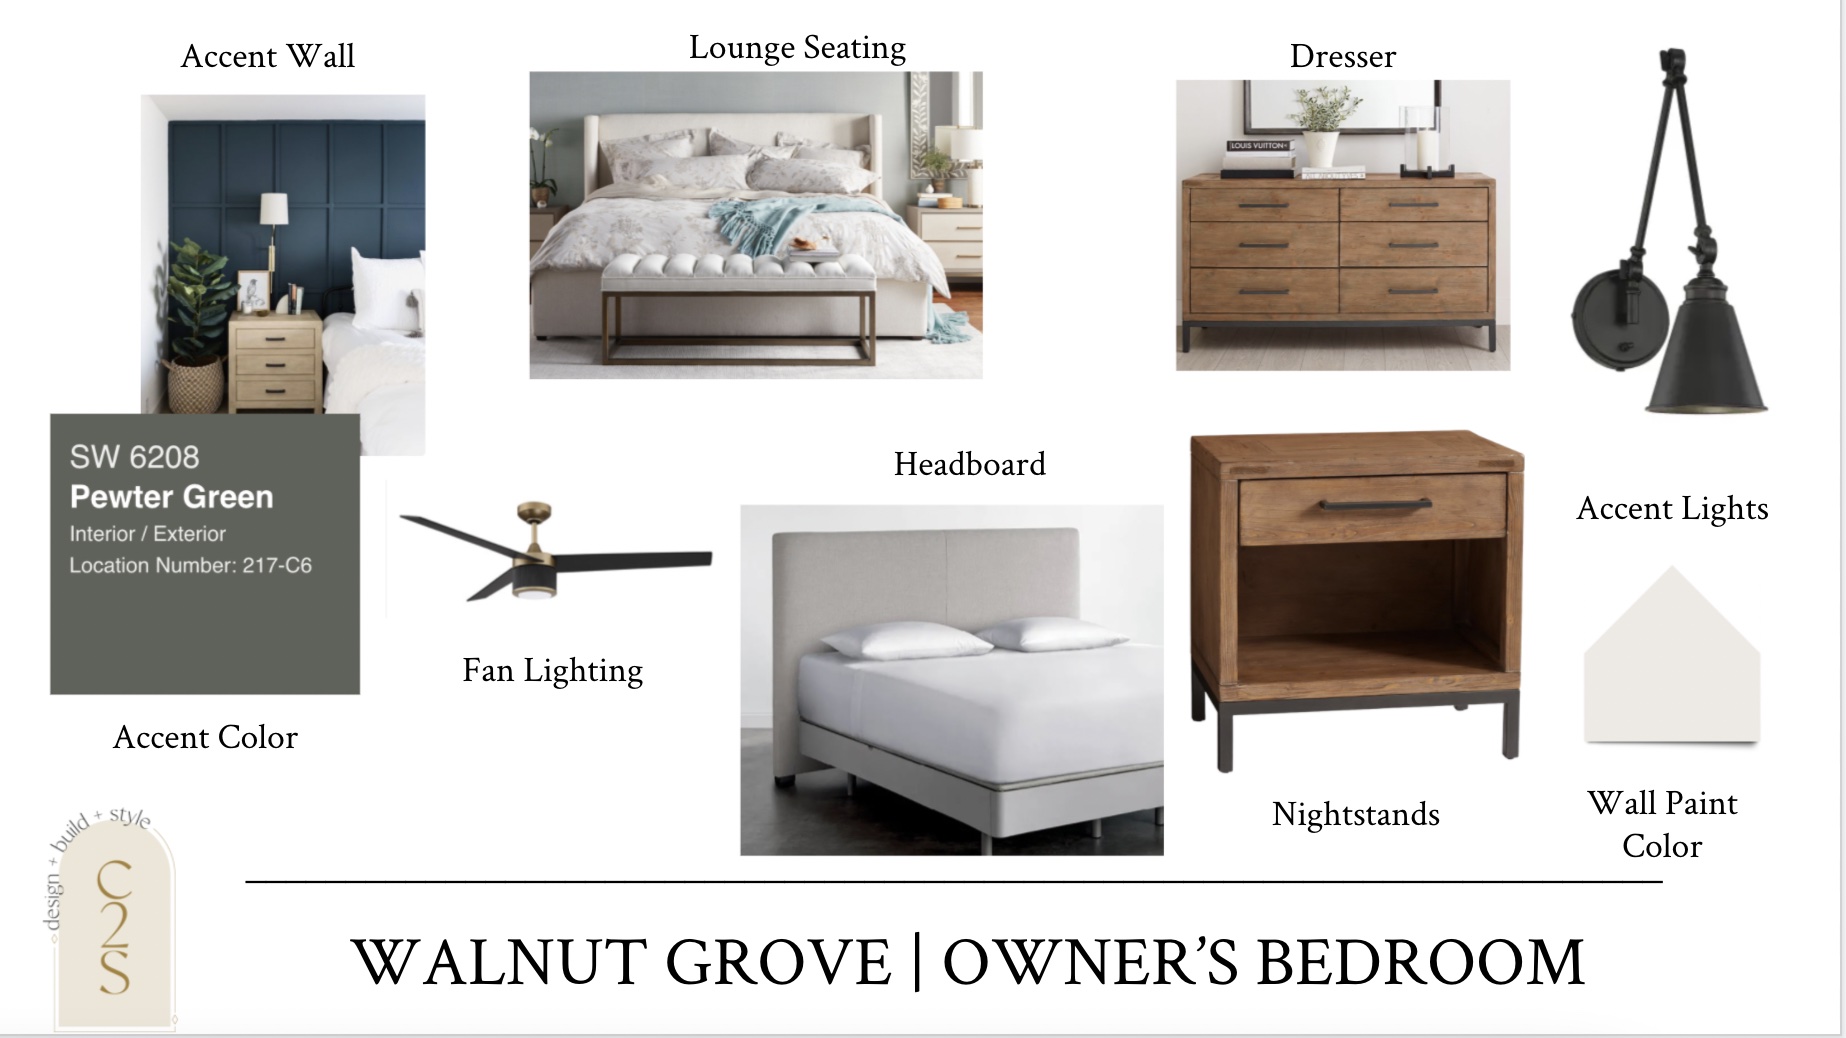 The Walnut Grove Home Design 12